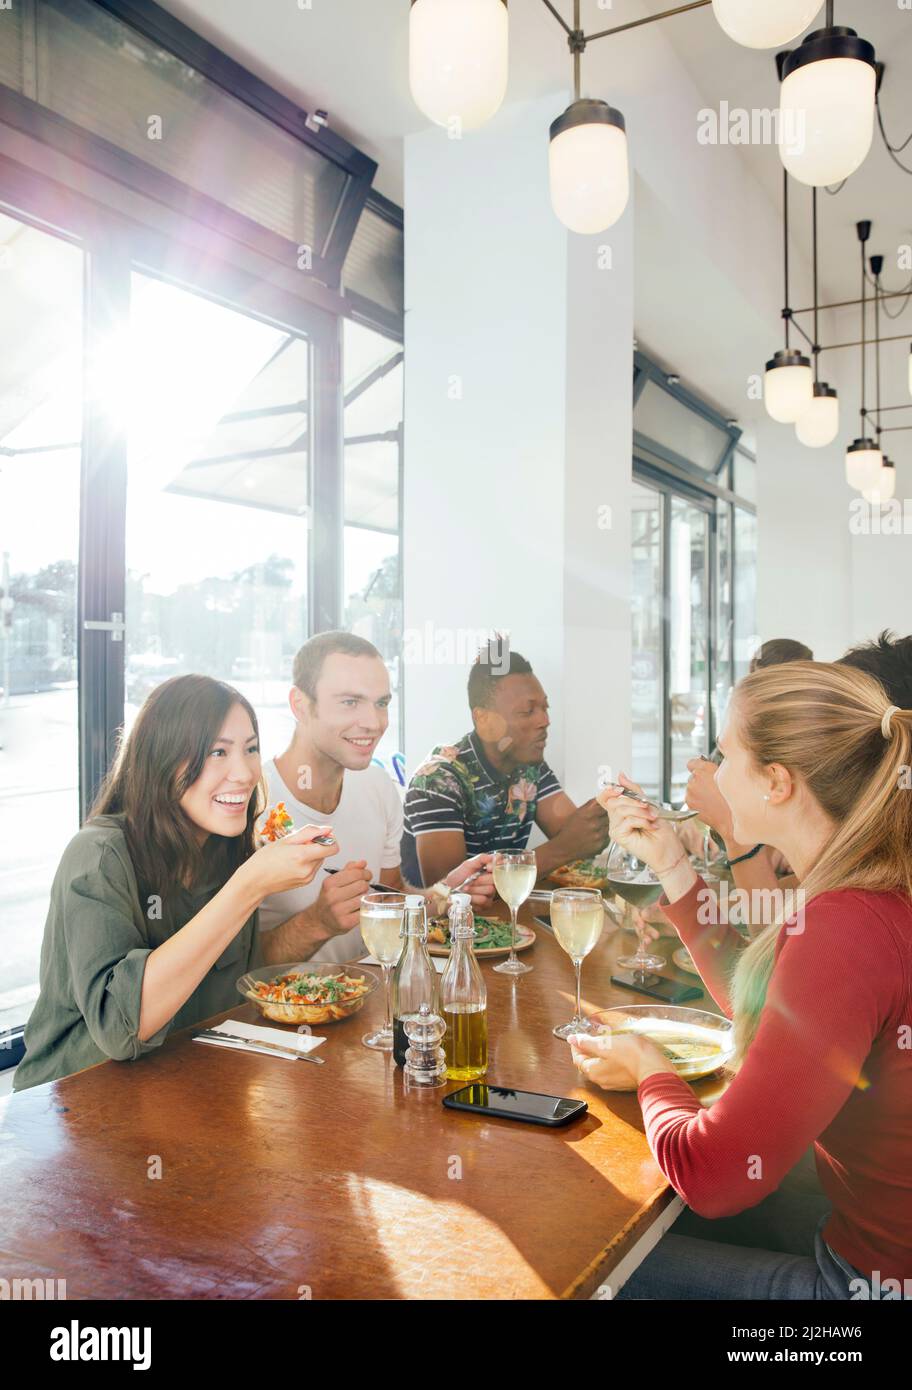 Groupe d'amis appréciant un repas au restaurant Banque D'Images